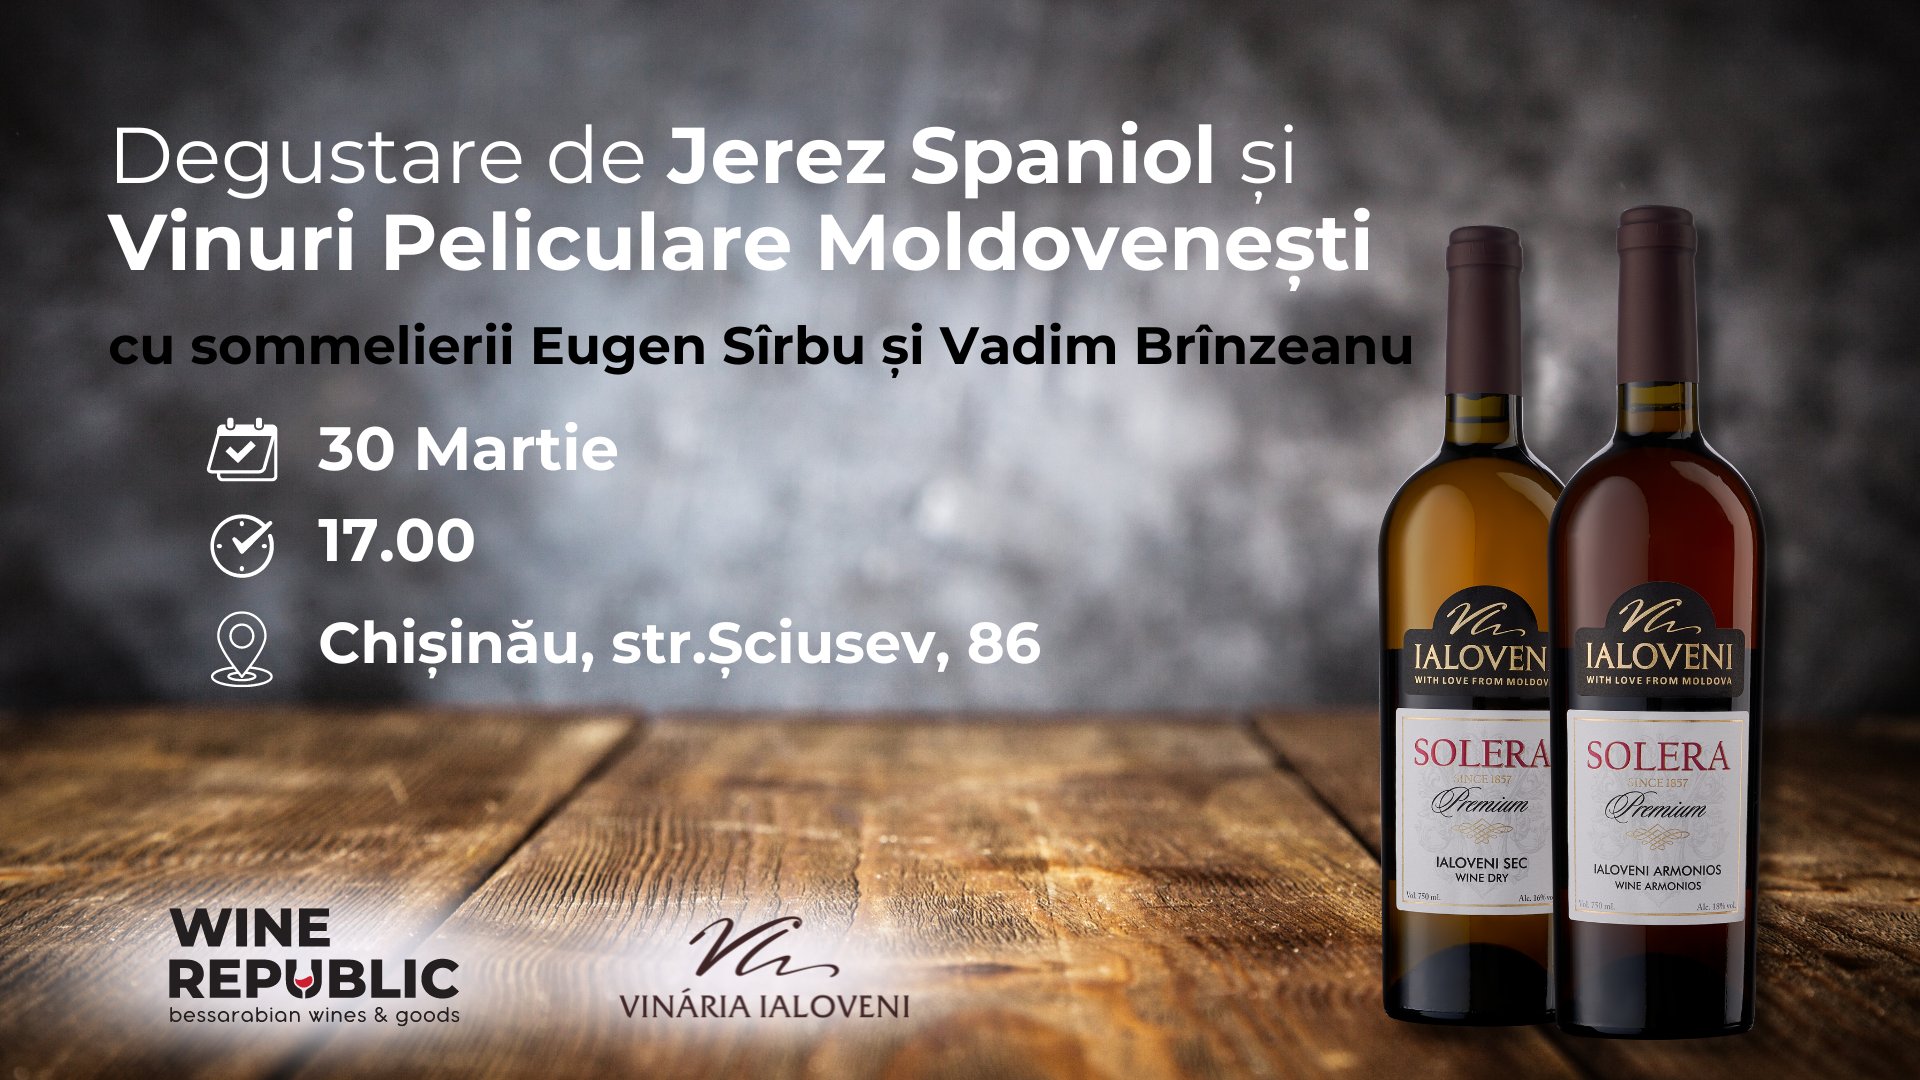 Degustare de Jerez Spaniol și Vinuri Peliculare Moldovenești